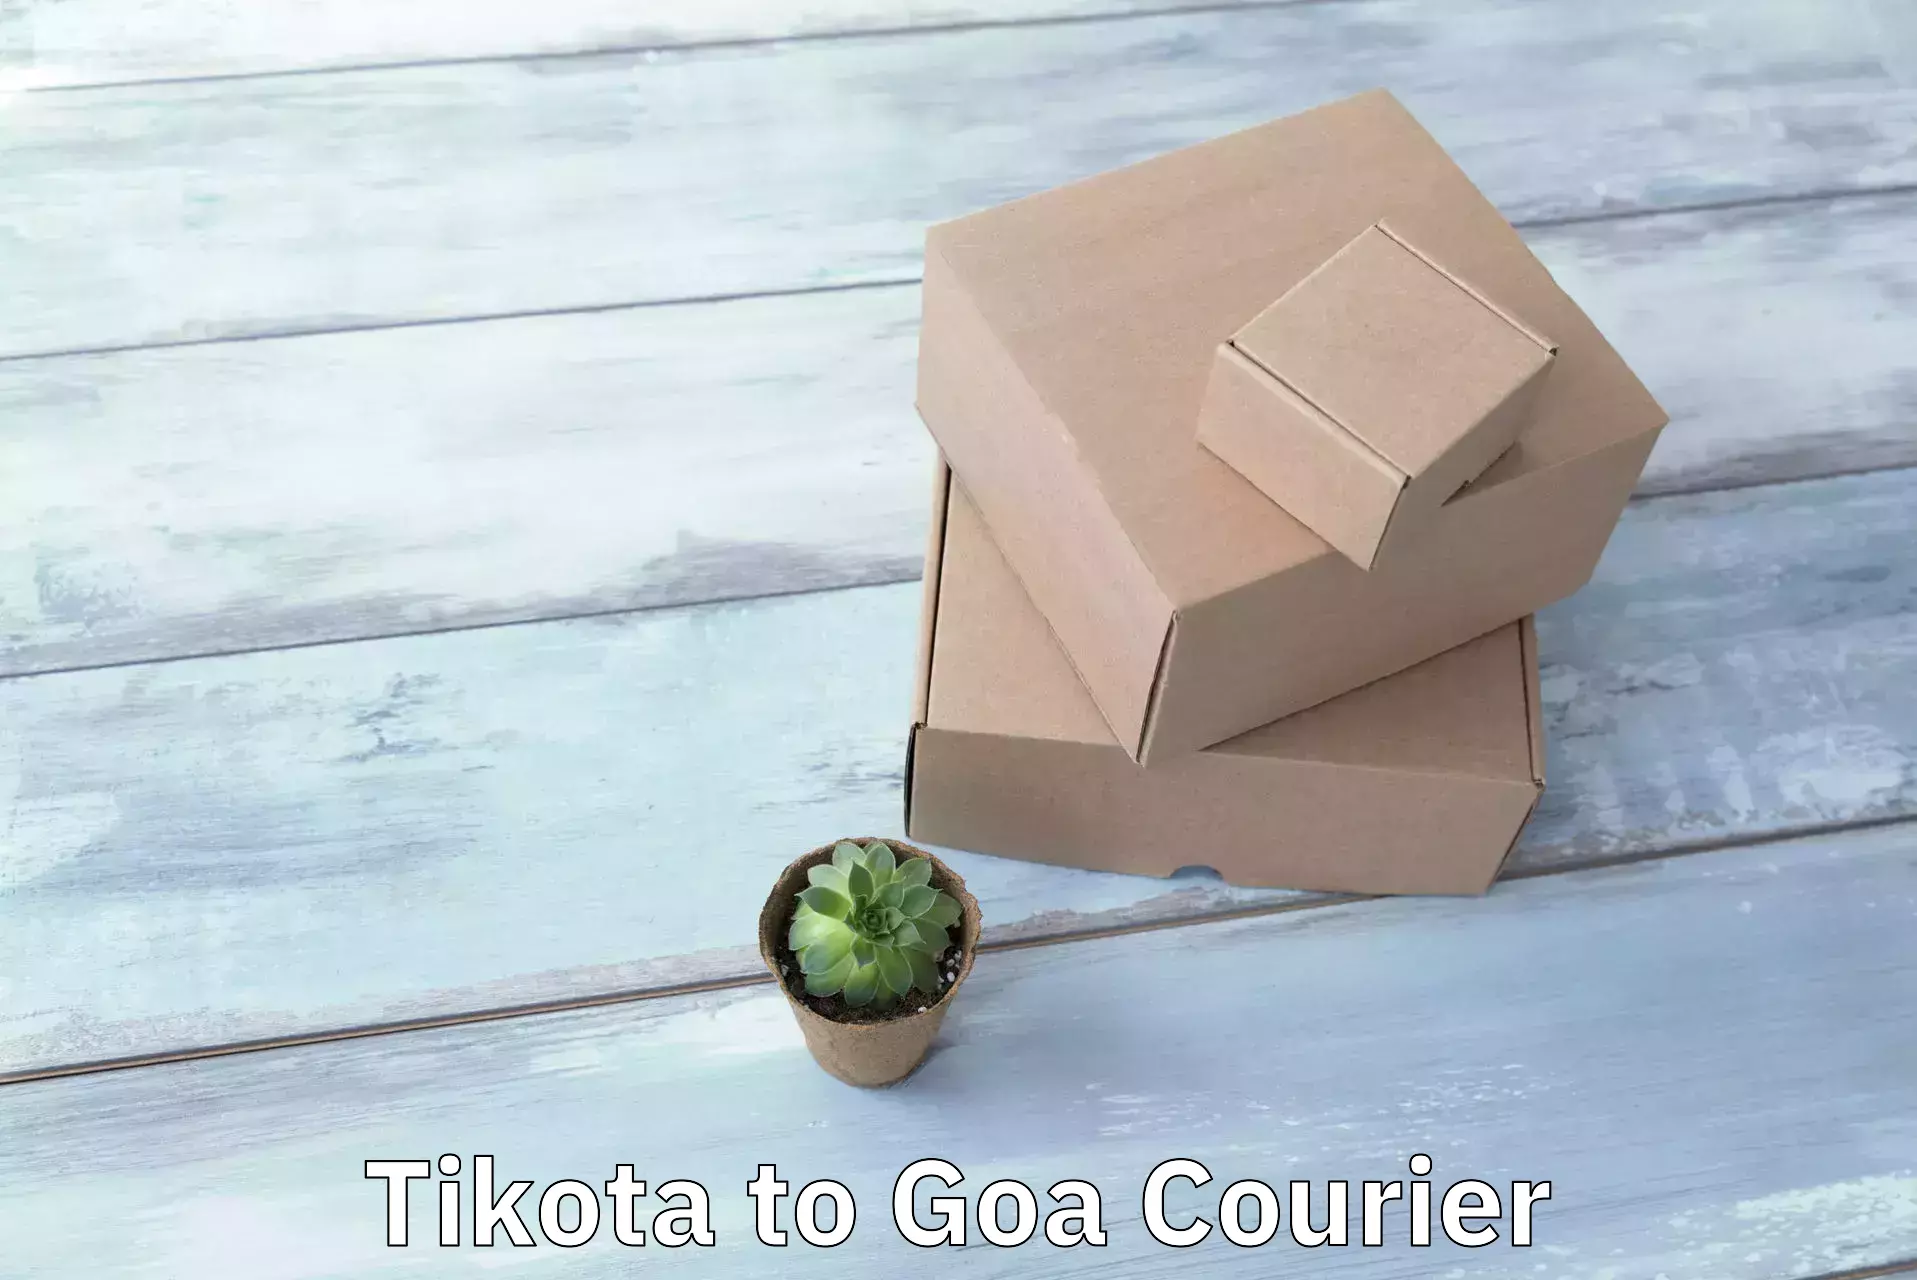 International shipping rates Tikota to Goa